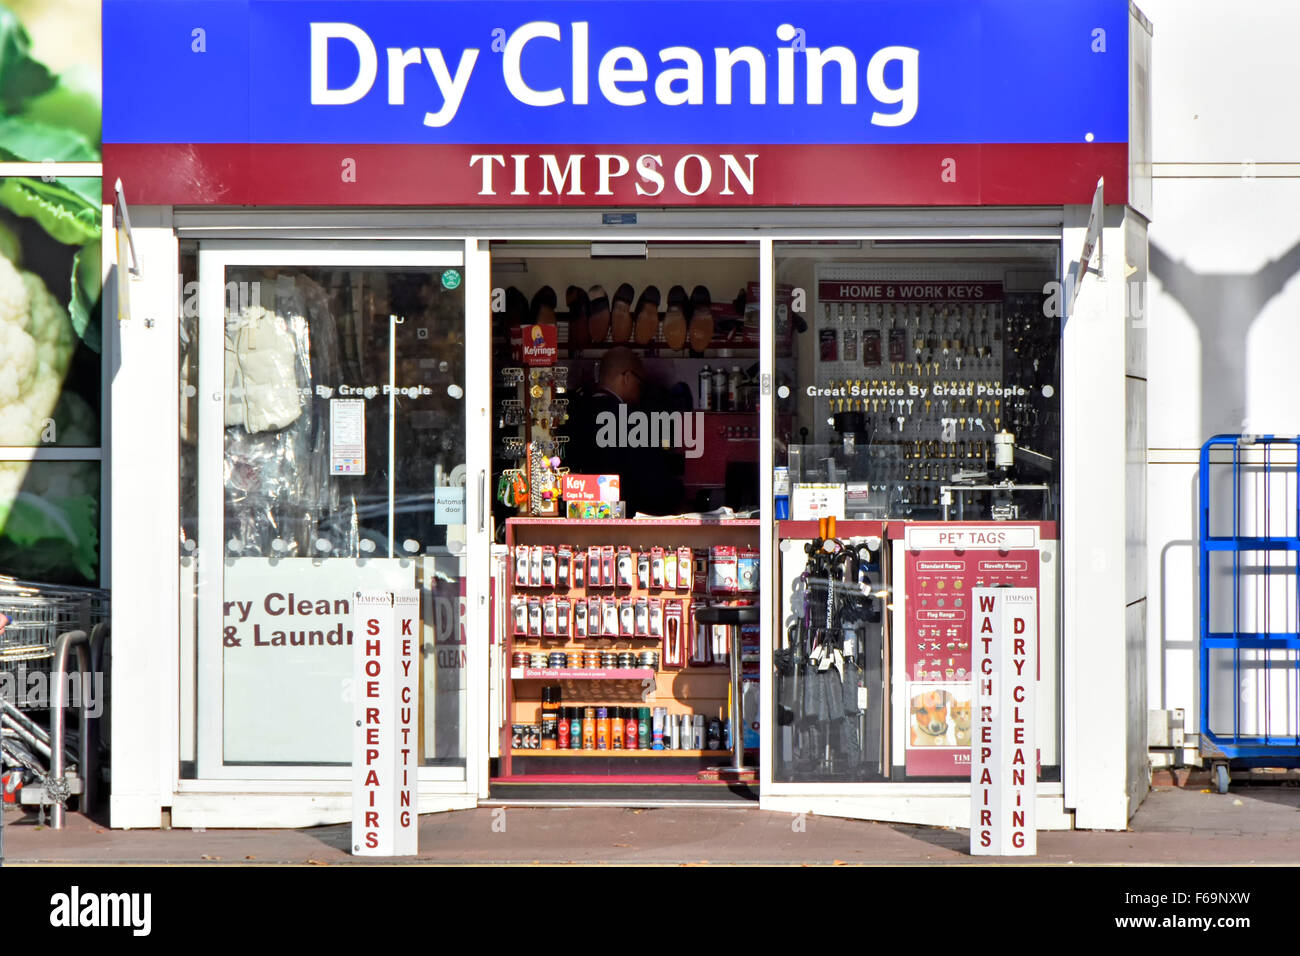 Timpson Dry Cleaning, negozio di articoli per la raccolta e la riparazione, davanti all'ingresso principale del supermercato Tesco Extra, Londra, Inghilterra, Regno Unito Foto Stock